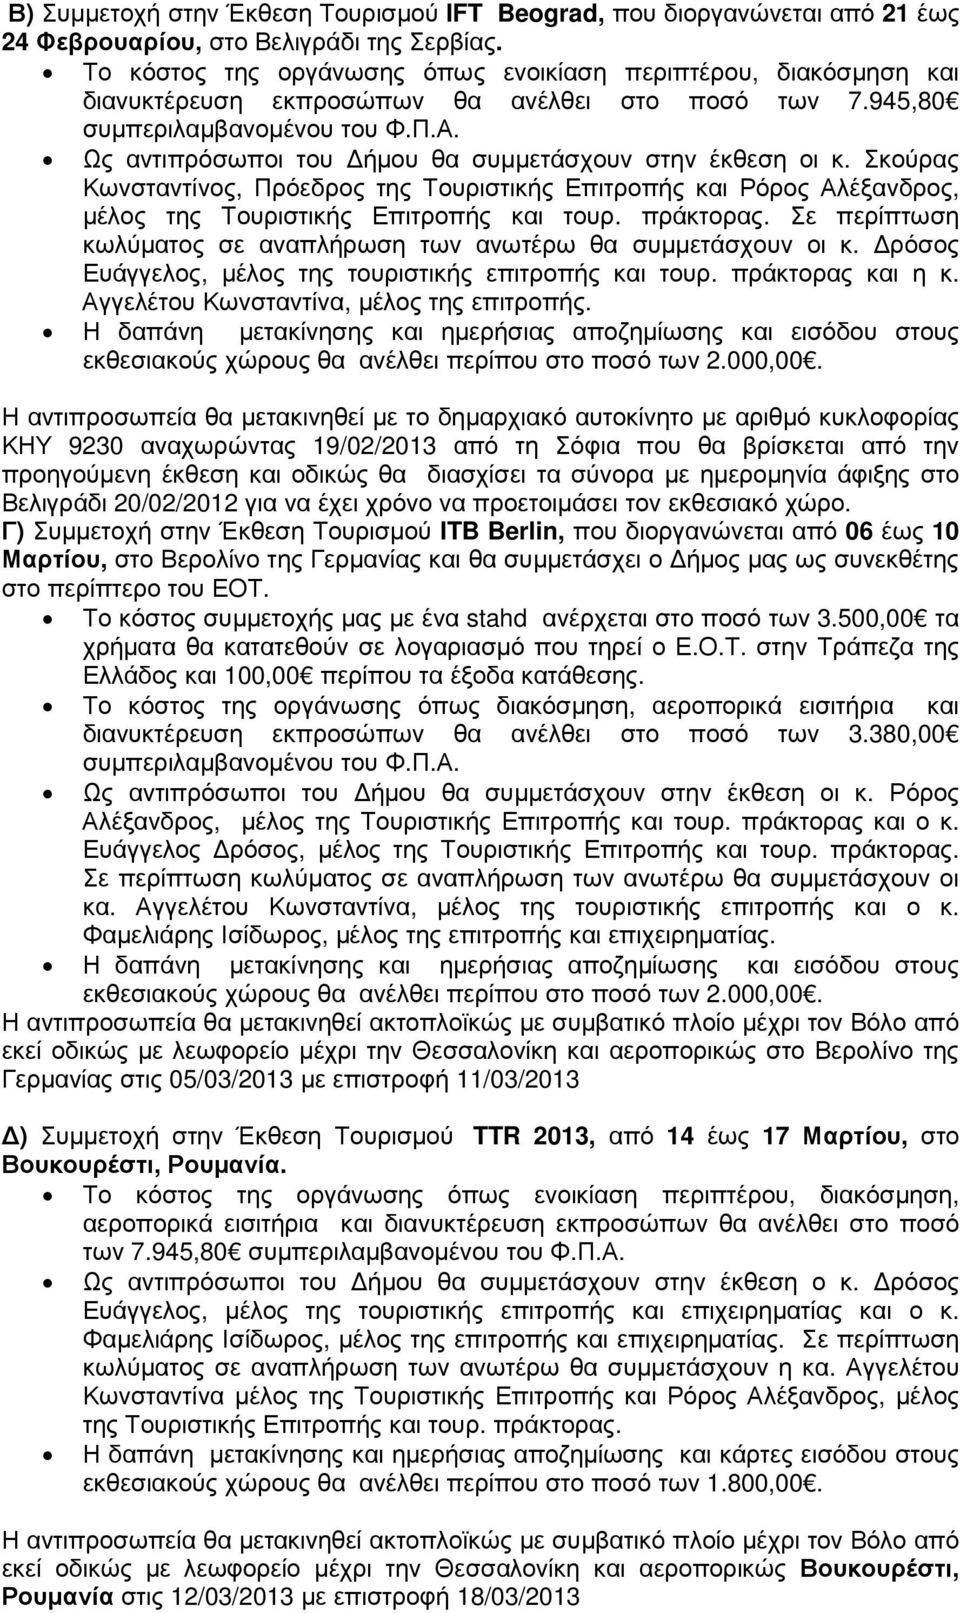 ΚΗΥ 9230 αναχωρώντας 19/02/2013 από τη Σόφια που θα βρίσκεται από την προηγούµενη έκθεση και οδικώς θα διασχίσει τα σύνορα µε ηµεροµηνία άφιξης στο Βελιγράδι 20/02/2012 για να έχει χρόνο να